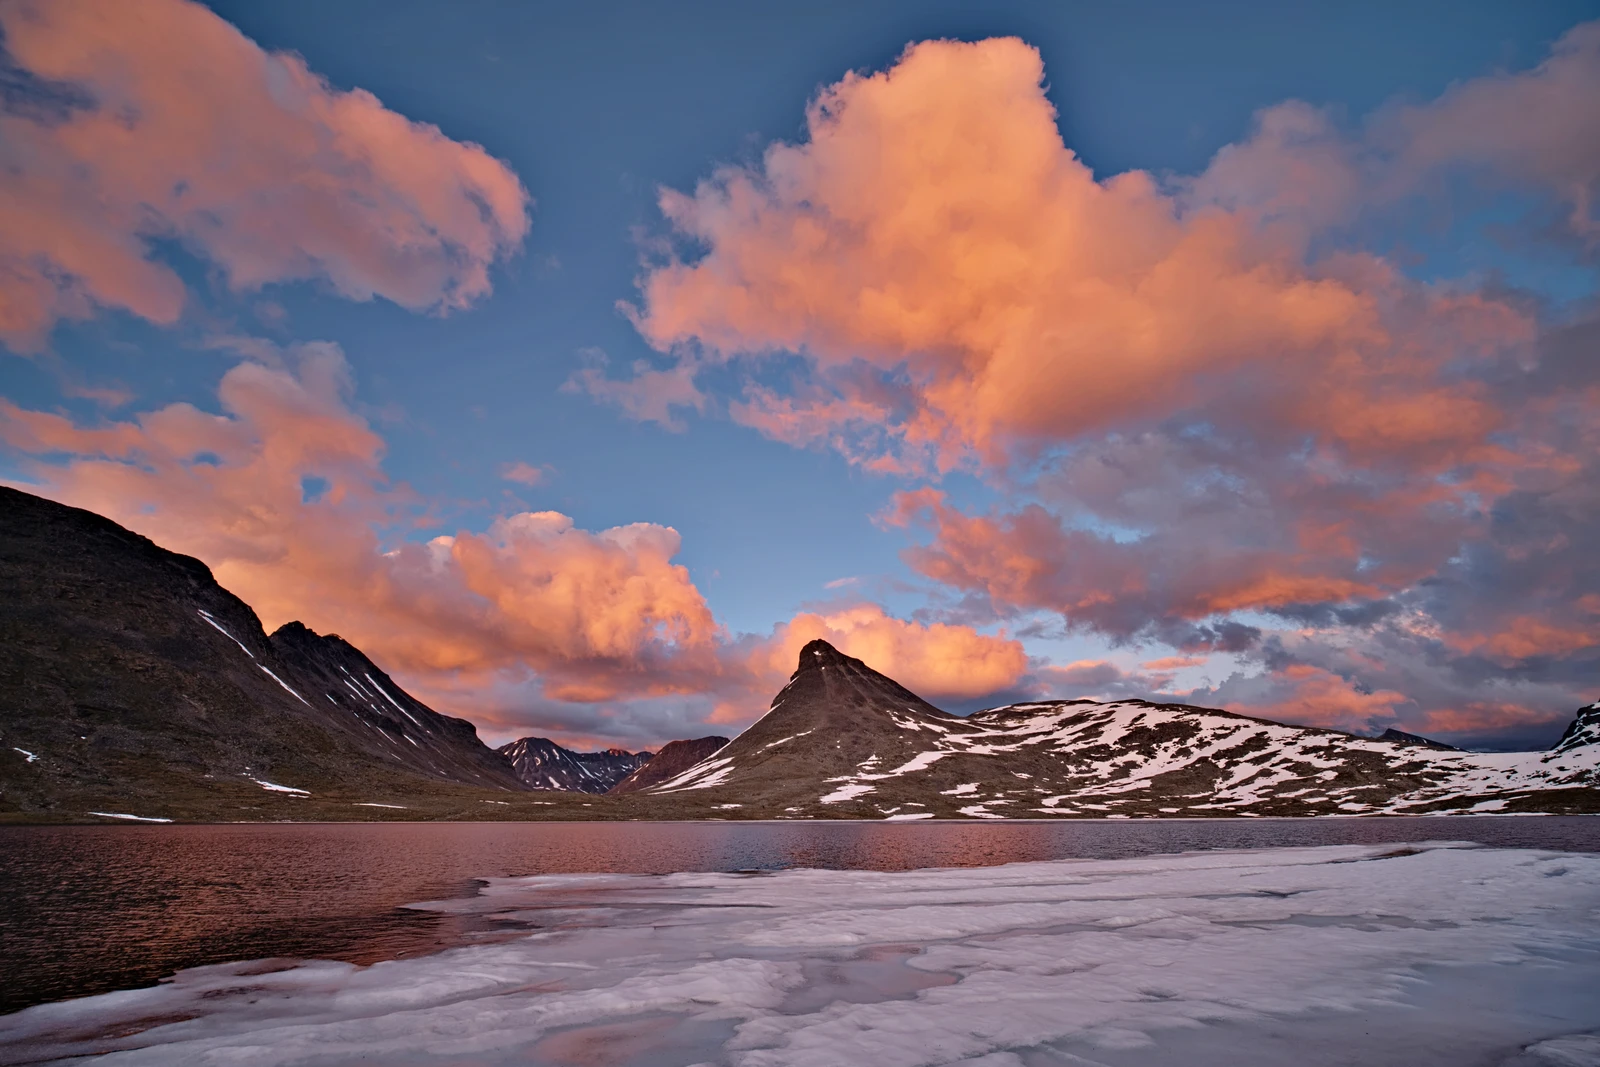 fototrick farbkontraste mit blauem himmel orangenen wolken über schneebedeckten bergen